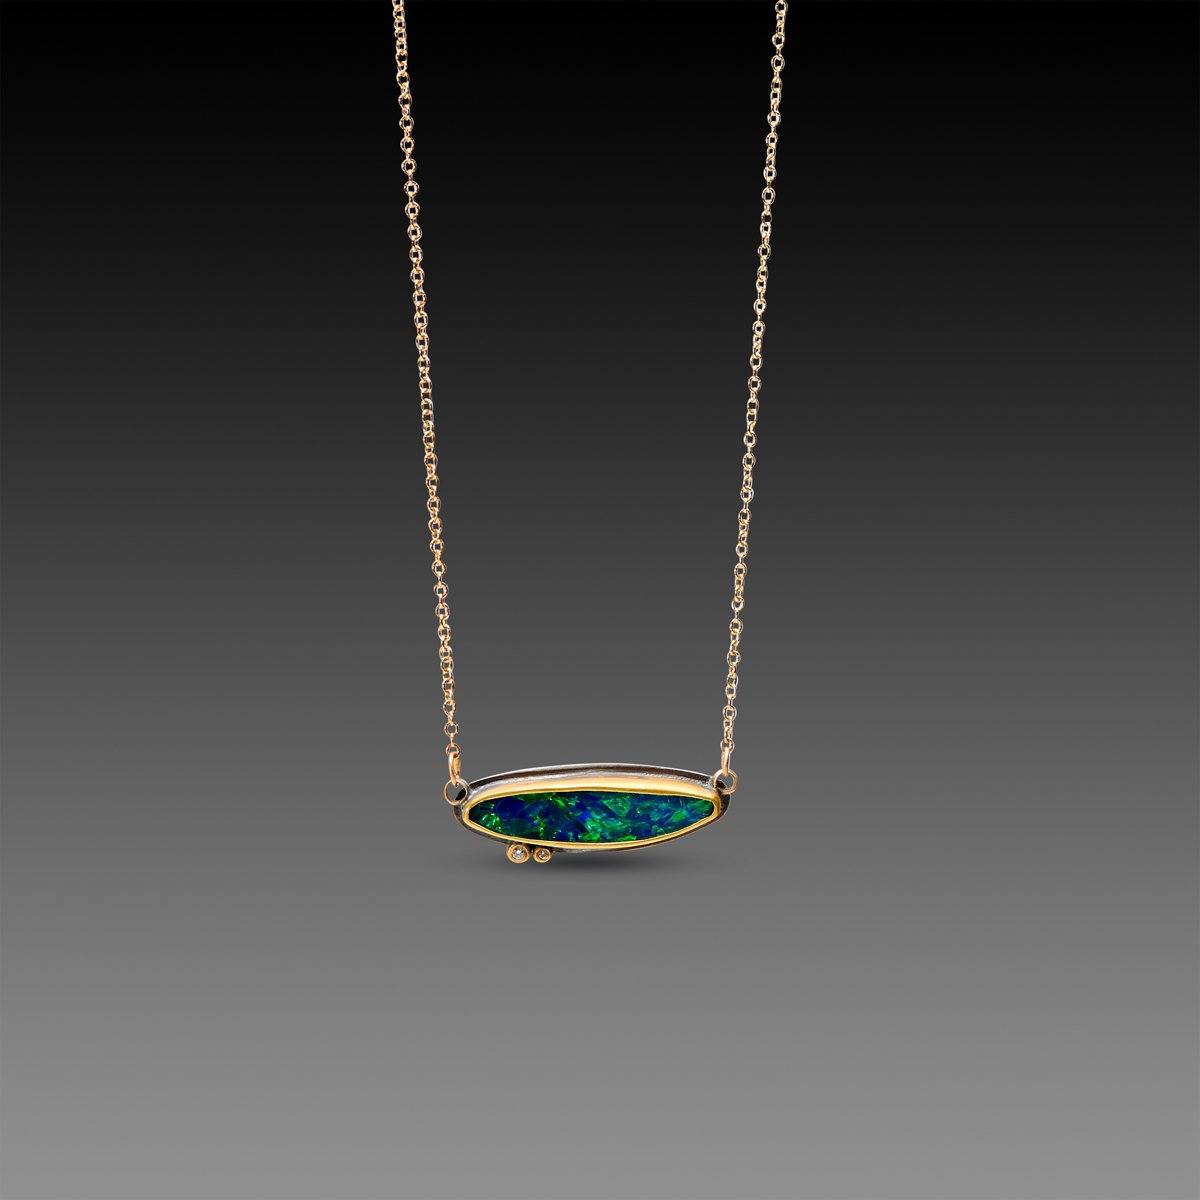 Australian Opal Necklace with Scattered Diamonds – Dajhan Gems & Jewelry